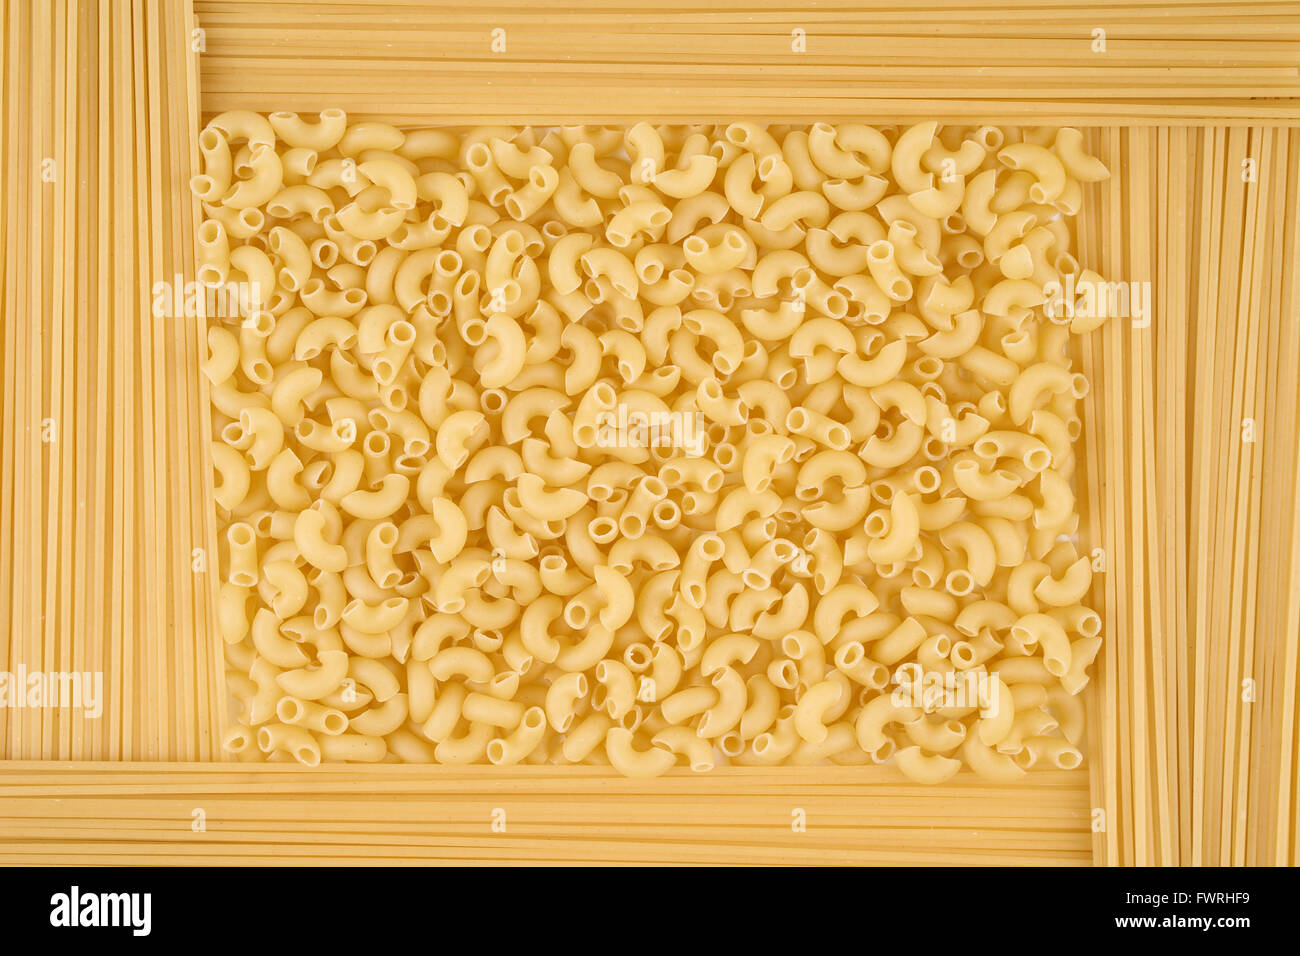 Auswahl an Pasta im Rahmen als Konzept und Essen Hintergrund Stockfoto